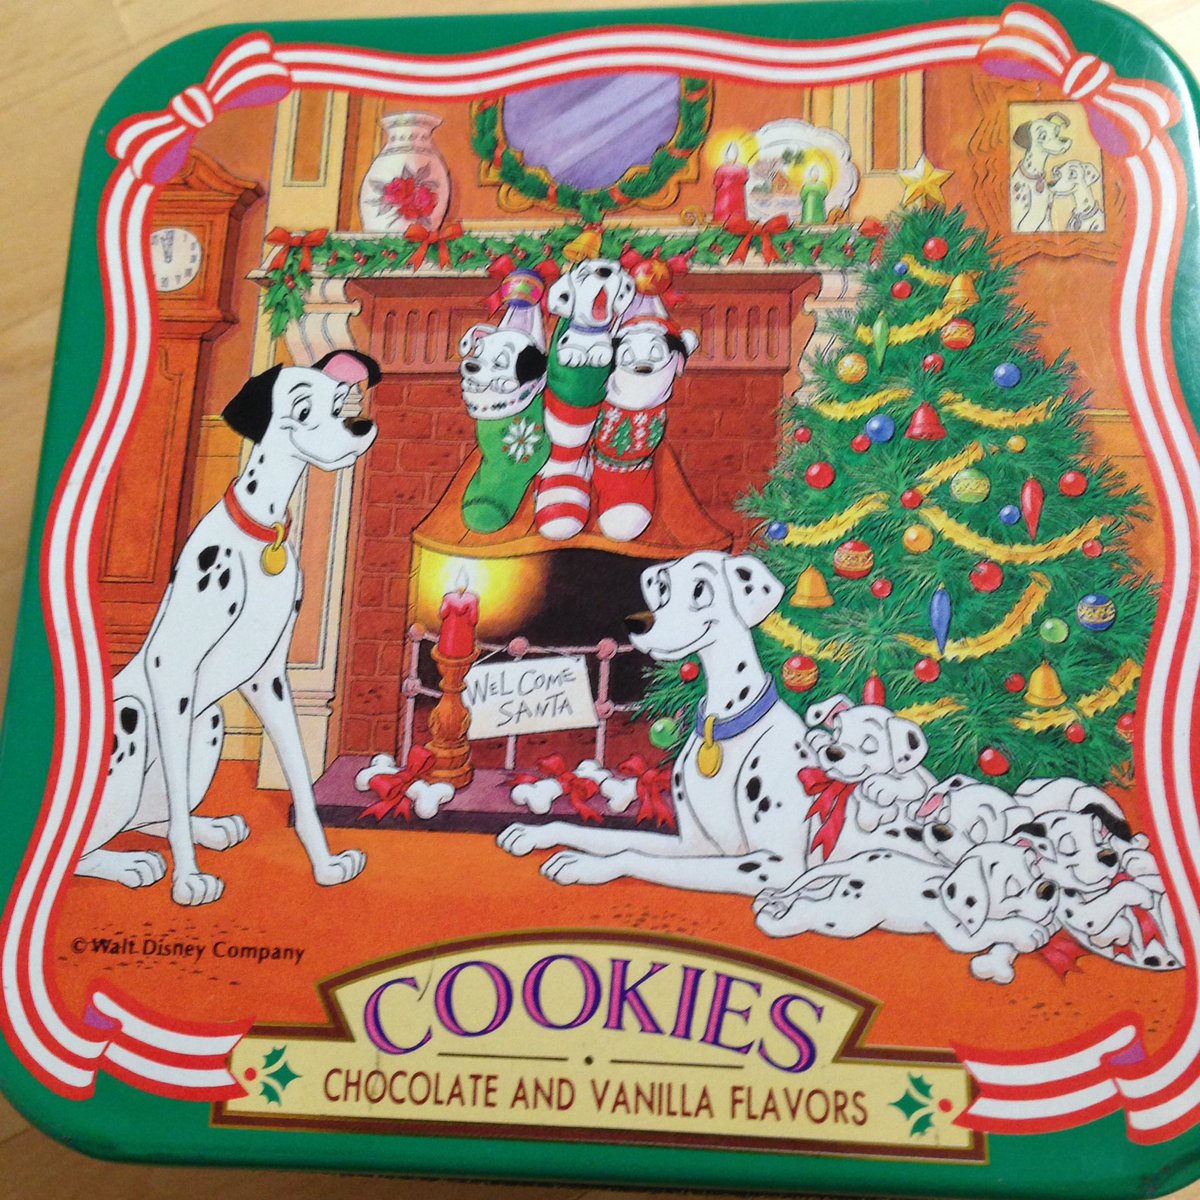 Hige Choco 所有する最古のディズニーおみやげ缶 賞味期限から考えて1996年のクリスマス 101匹わんちゃんは大好きな作品でお気に入りの絵柄 クリスマス時期によく飾っていました 今は裁縫箱として現役